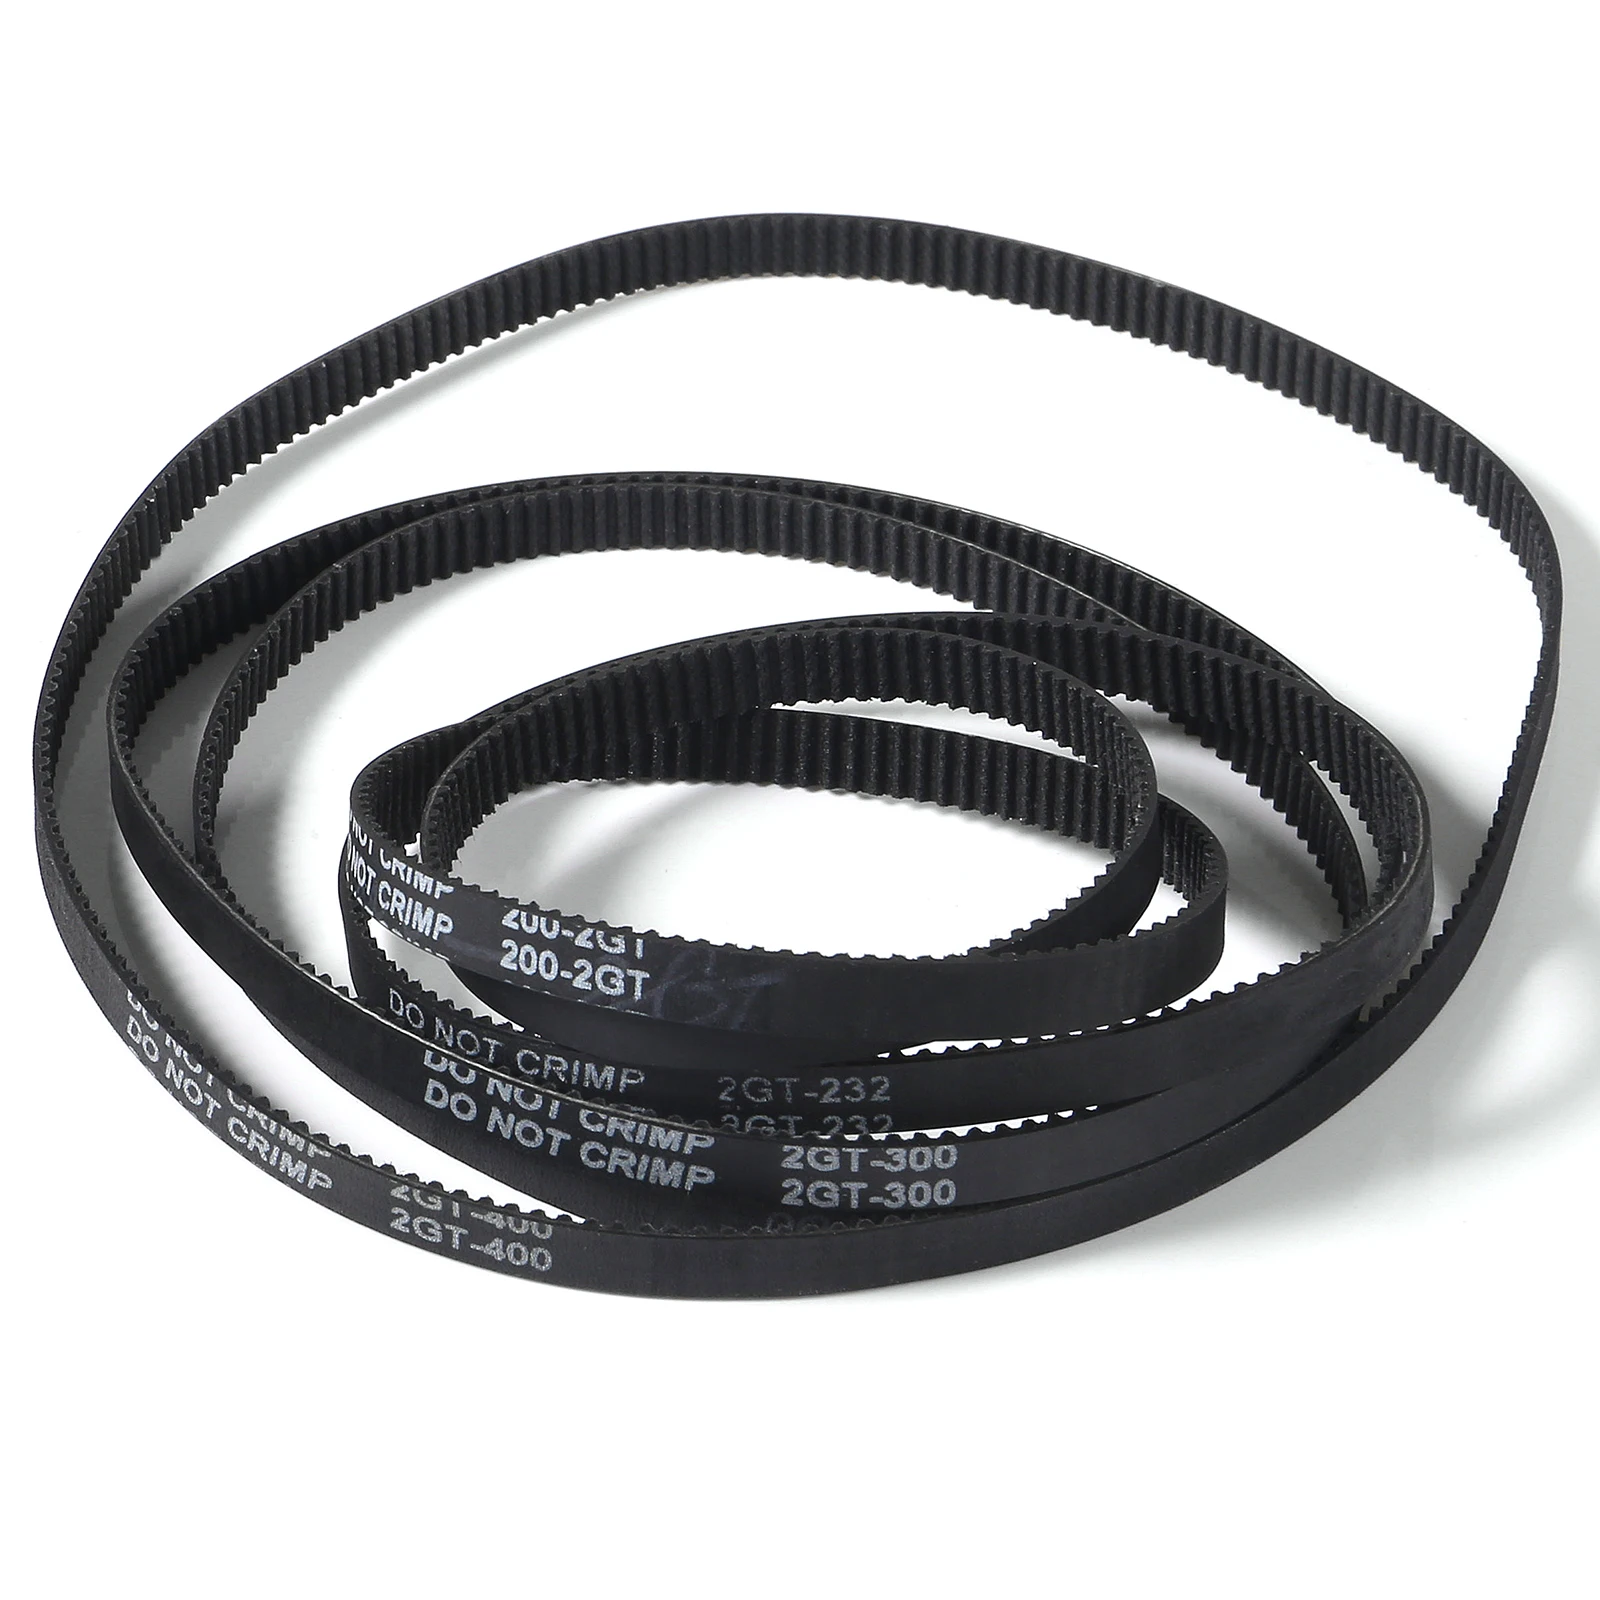 GT2 Closed Loop Timing Belt 2GT-6mm Transmission Belt 100mm 122mm 200mm 300mm 400mm 1220mm Synchronous Belts for 3D Printer